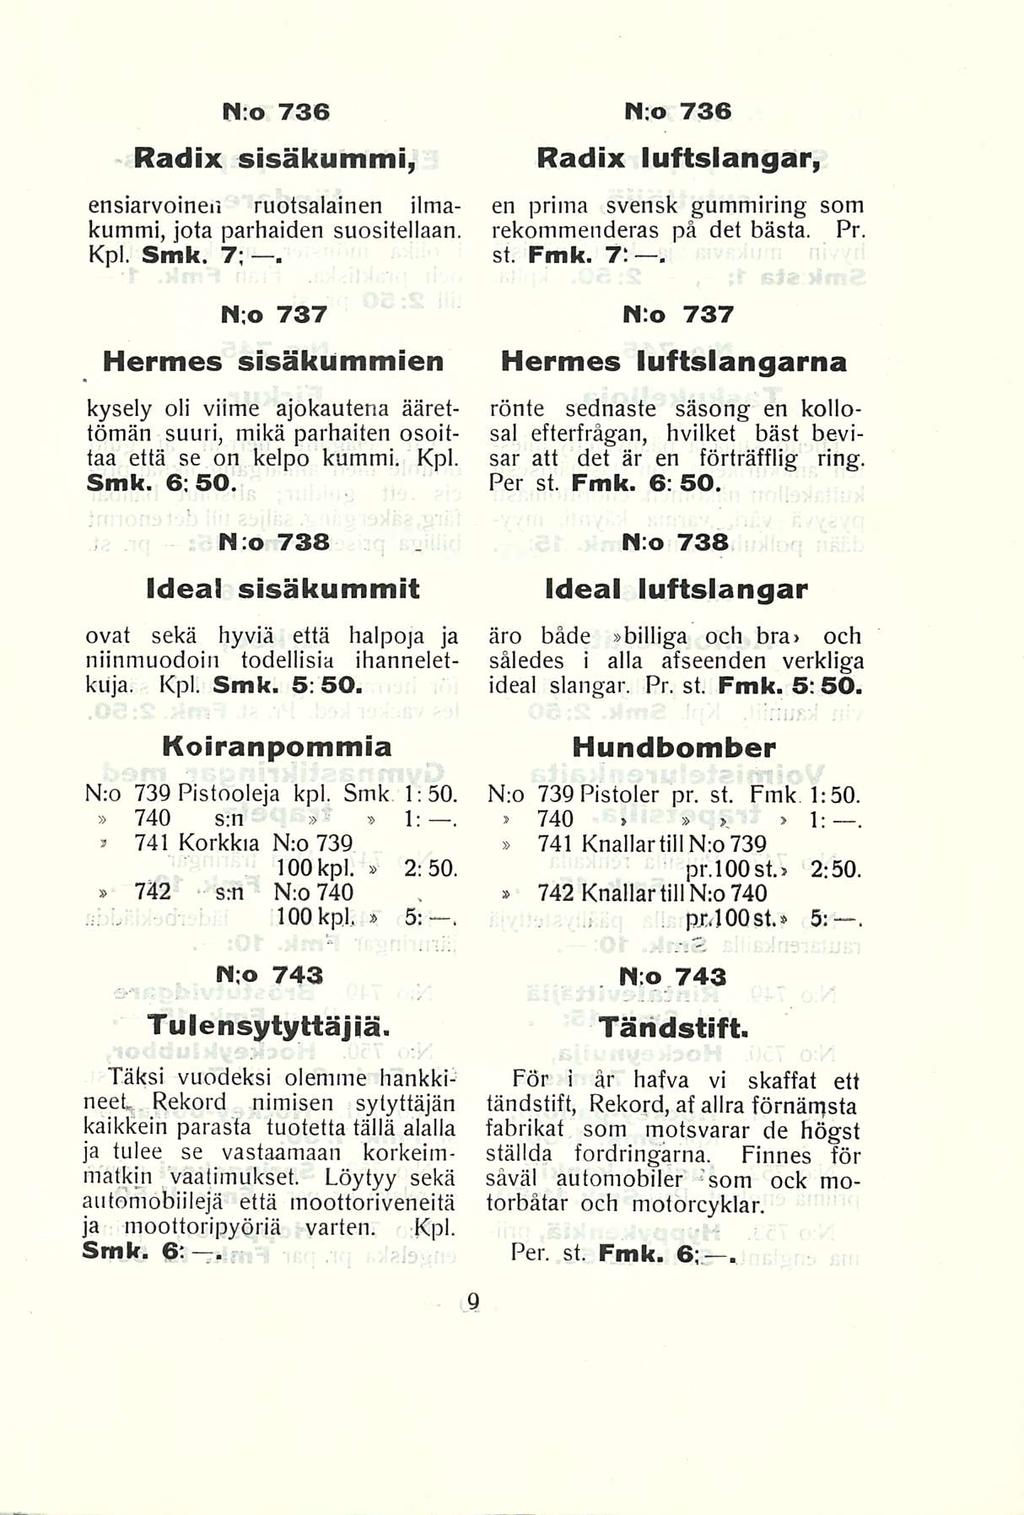 N;o 736 Radix sisäkummi, ensiarvoinen ruotsalainen ilmakummi, jota parhaiden suositellaan. Kpl. Smk. 7;.